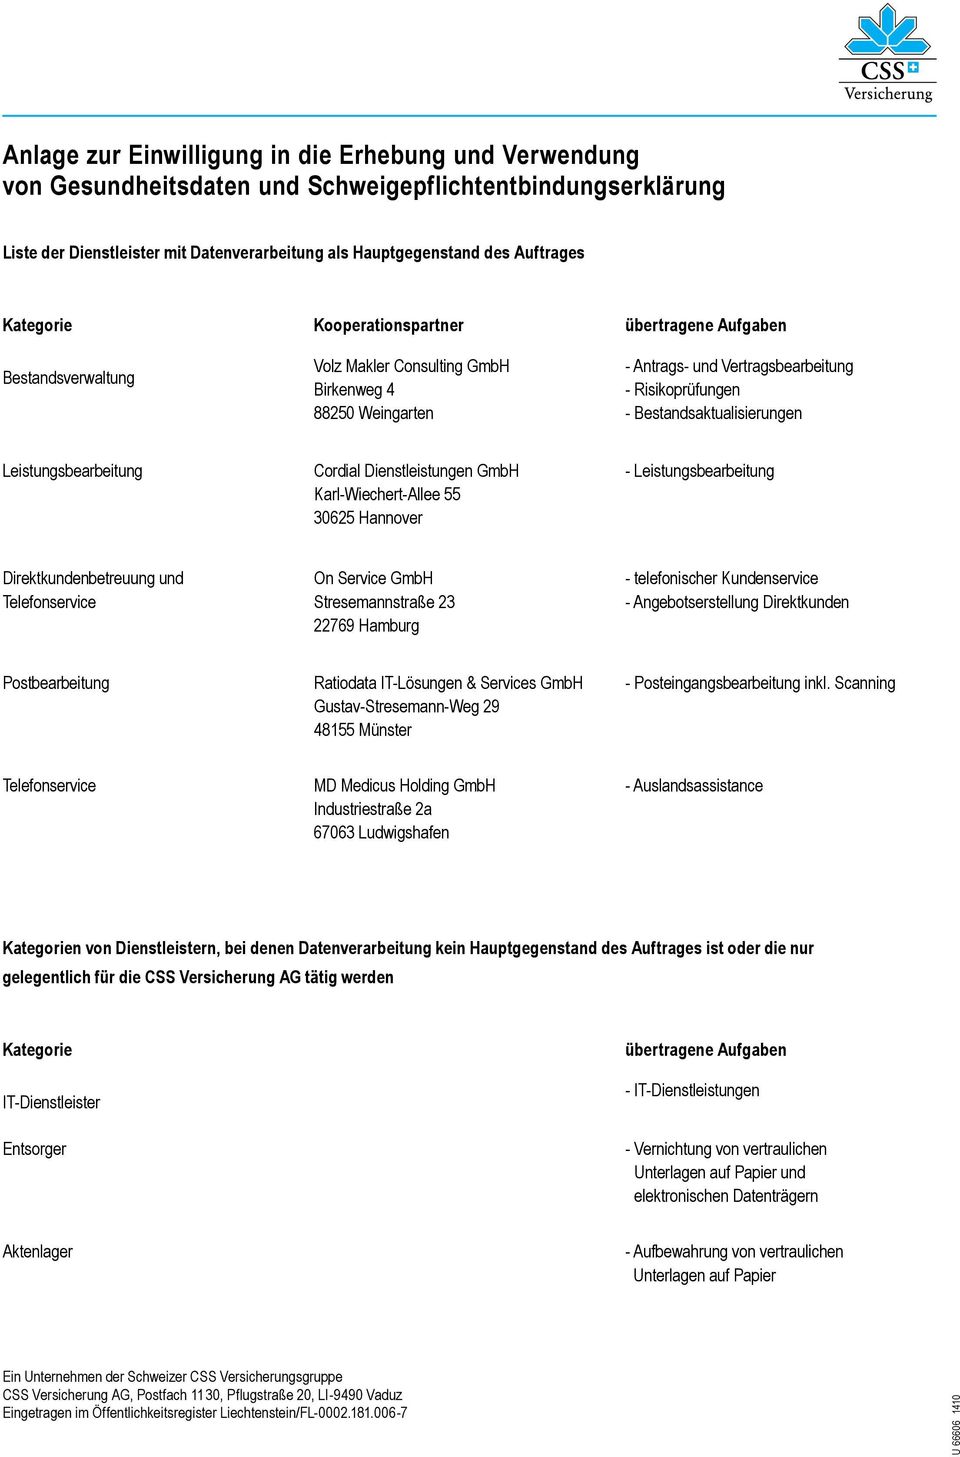 Bestandsaktualisierungen Leistungsbearbeitung Cordial Dienstleistungen GmbH Karl-Wiechert-Allee 55 30625 Hannover - Leistungsbearbeitung Direktkundenbetreuung und Telefonservice On Service GmbH